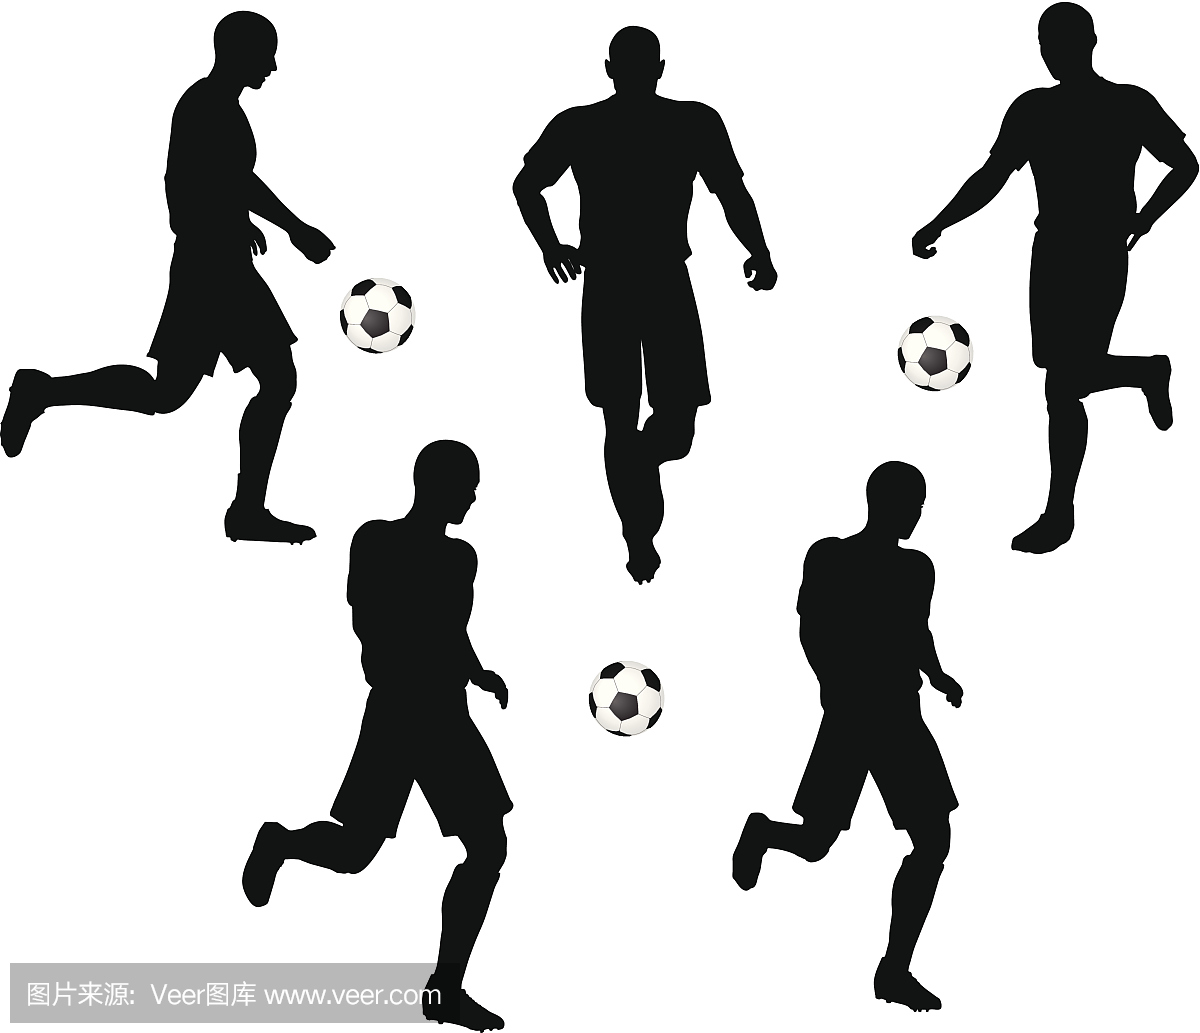 姿势的足球运动员剪影在运行的位置